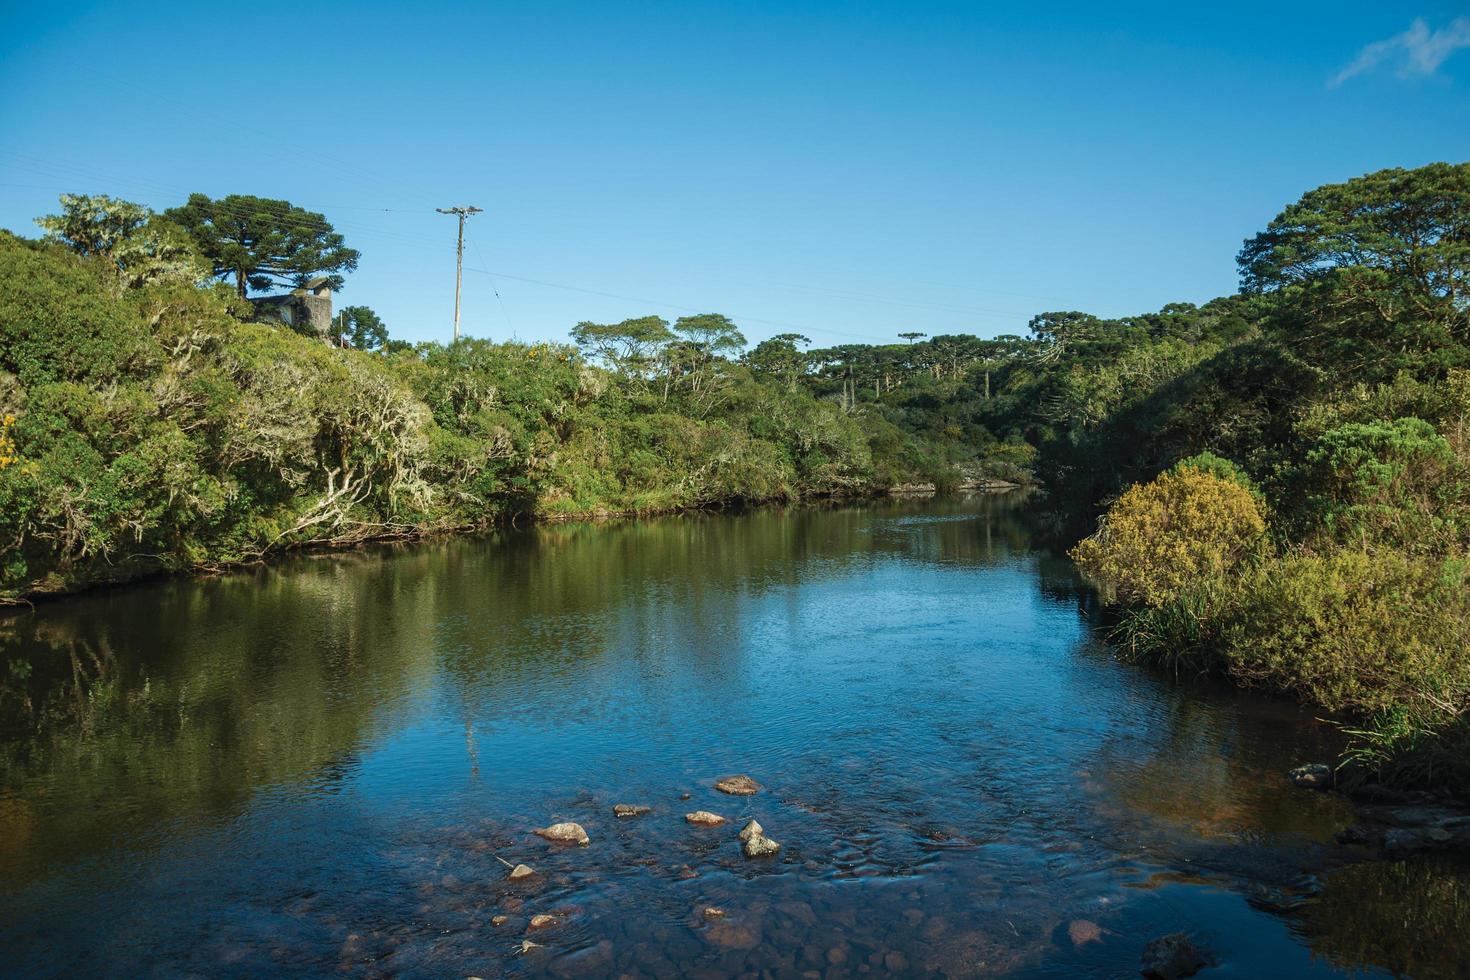 águas cristalinas em um riacho que atravessa a floresta do parque nacional dos aparados da serra, próximo a cambara do sul. uma pequena cidade do sul do brasil com incríveis atrativos turísticos naturais. foto